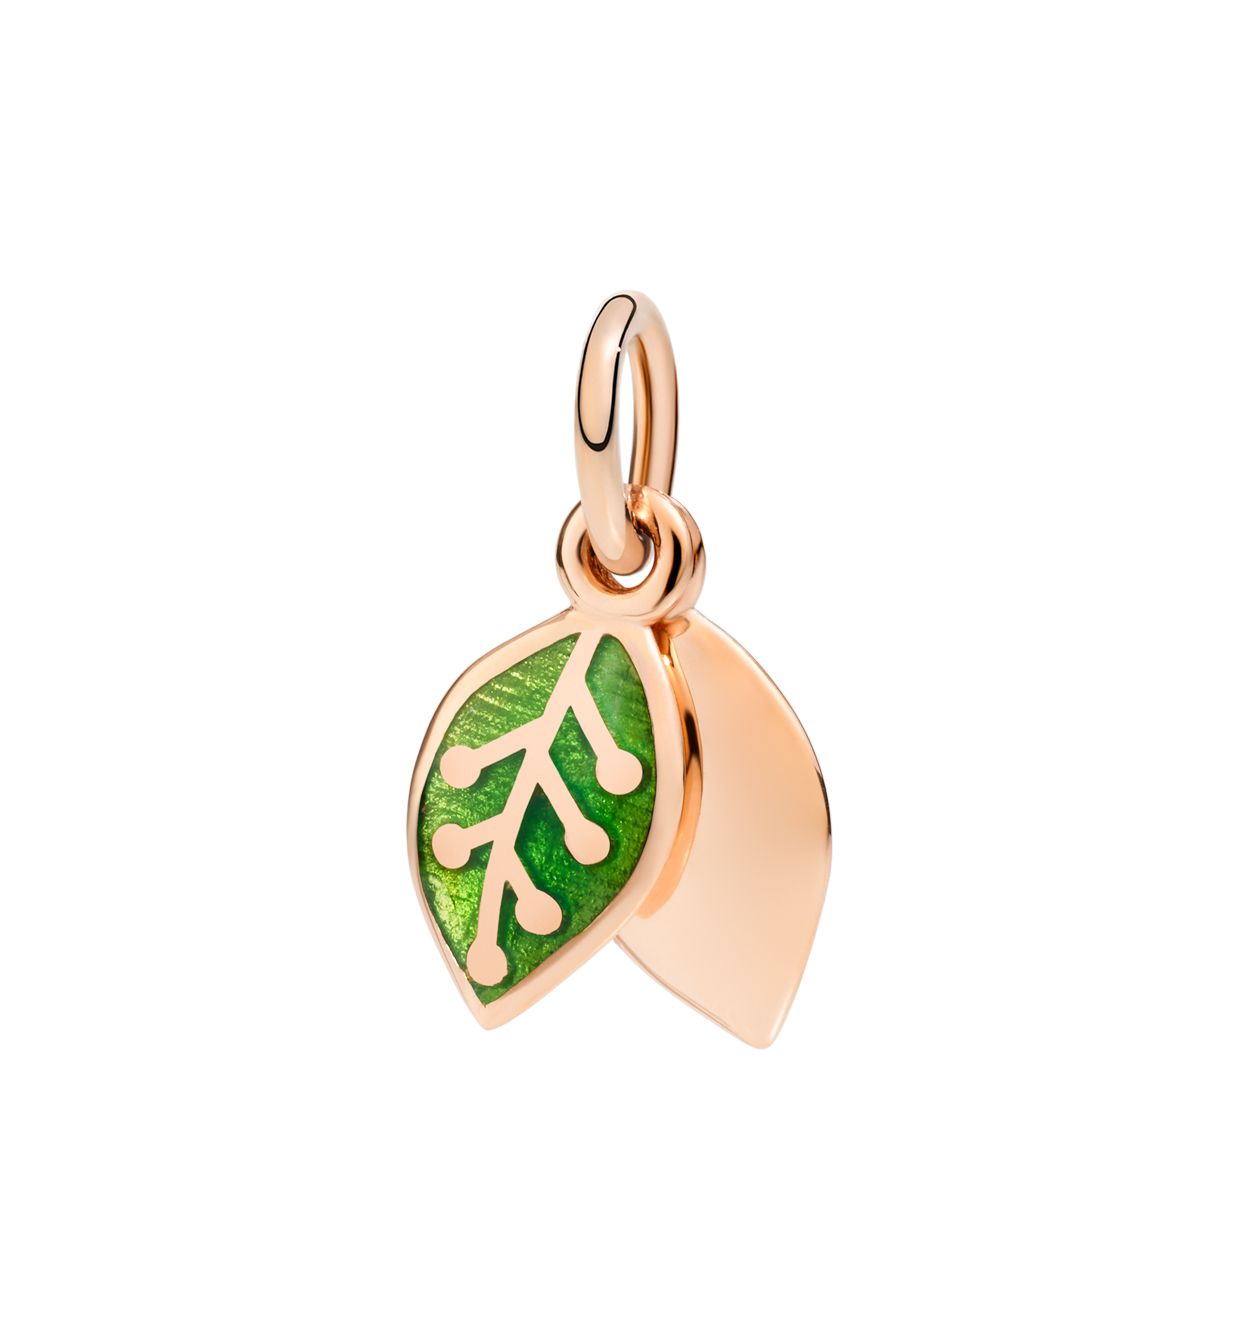 DoDo Leaf in 9k Rose Gold with Green Enamel - Orsini Jewellers NZ